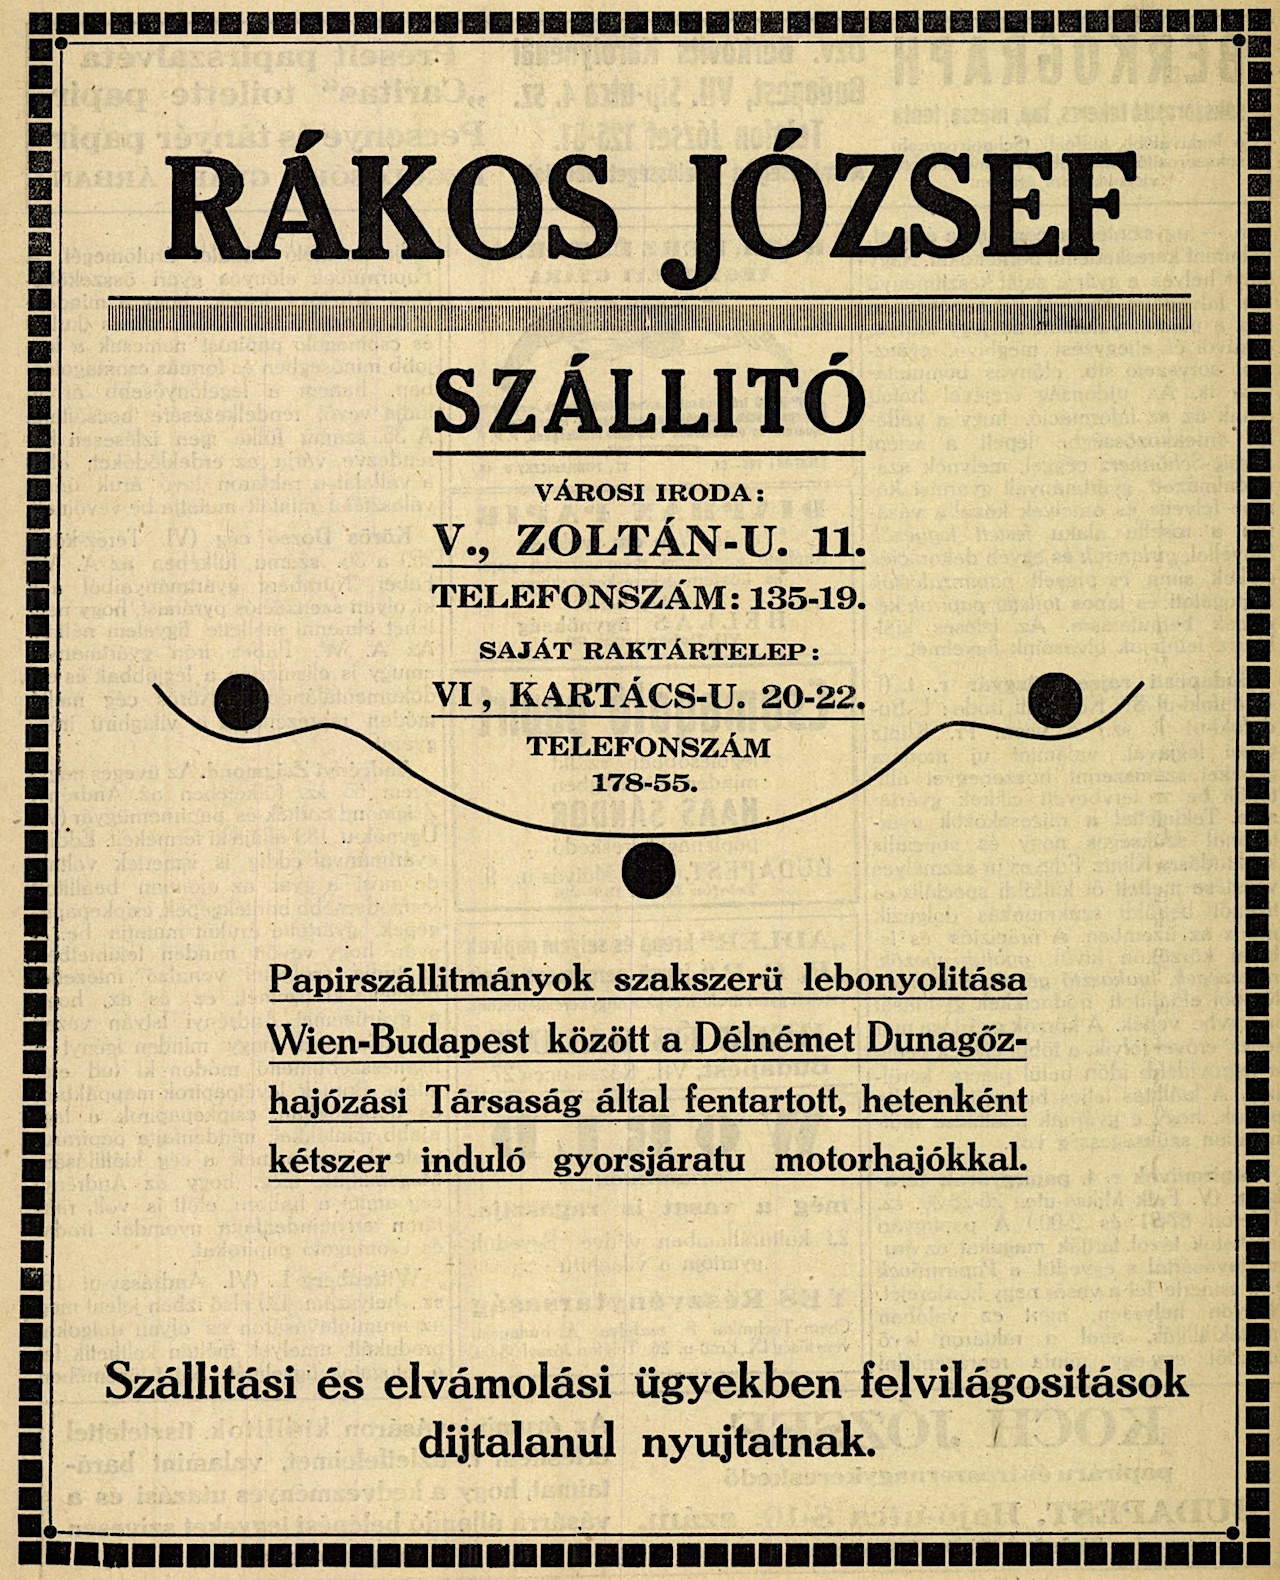 Rákos József hirdetése a Papír-Szaklap 1924. május 31-i számában.